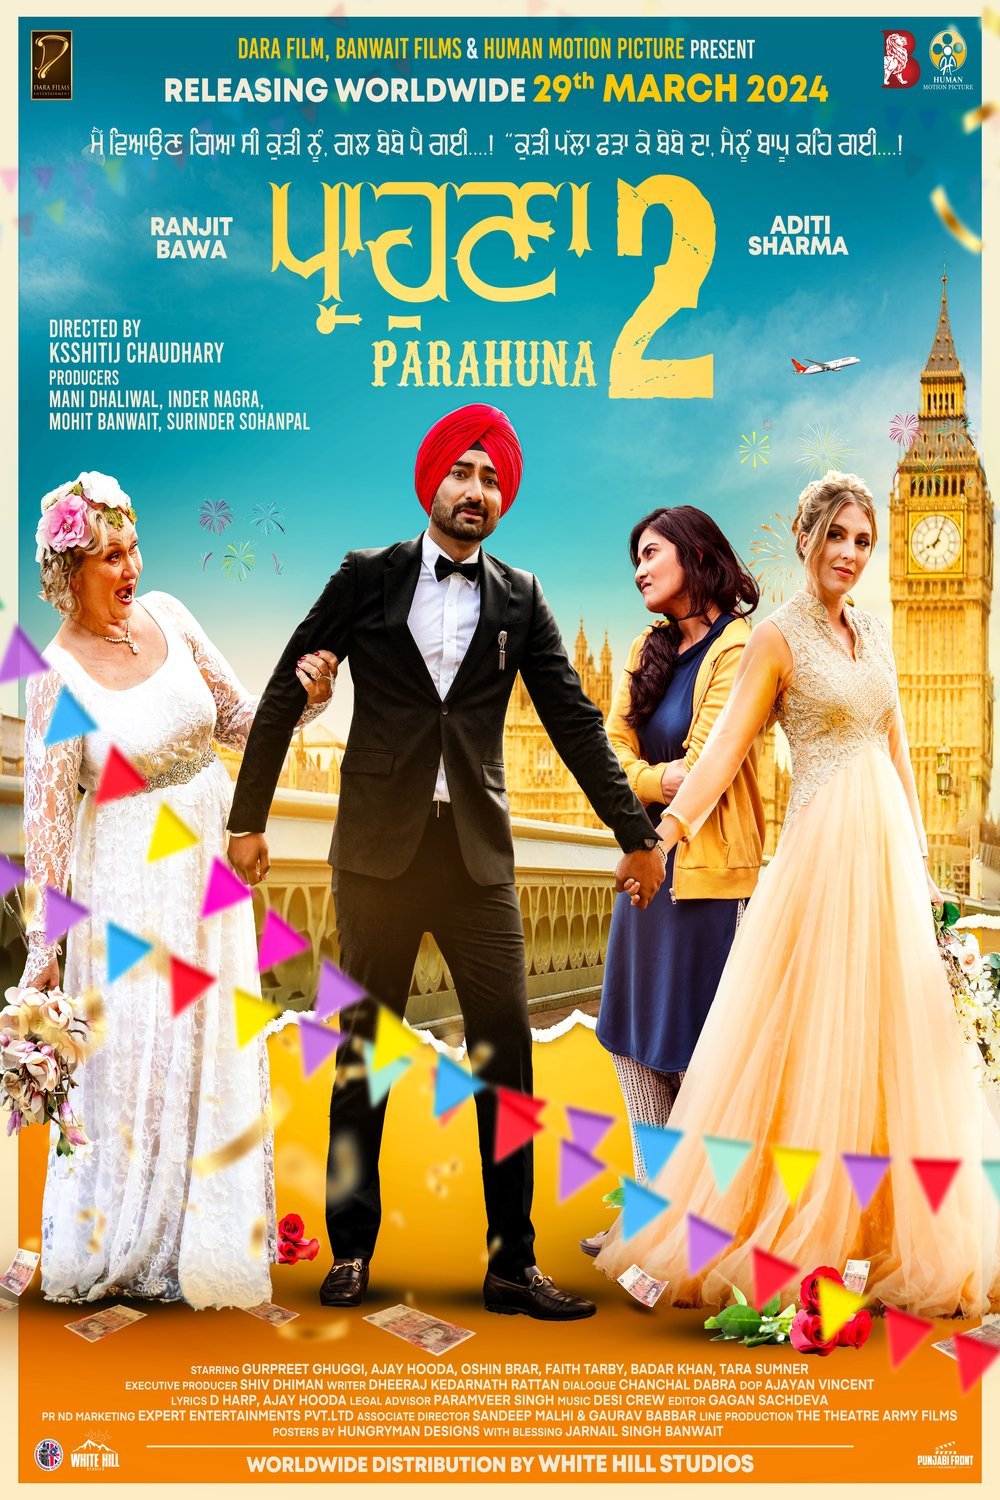 L'affiche originale du film Parahuna 2 en Penjabi